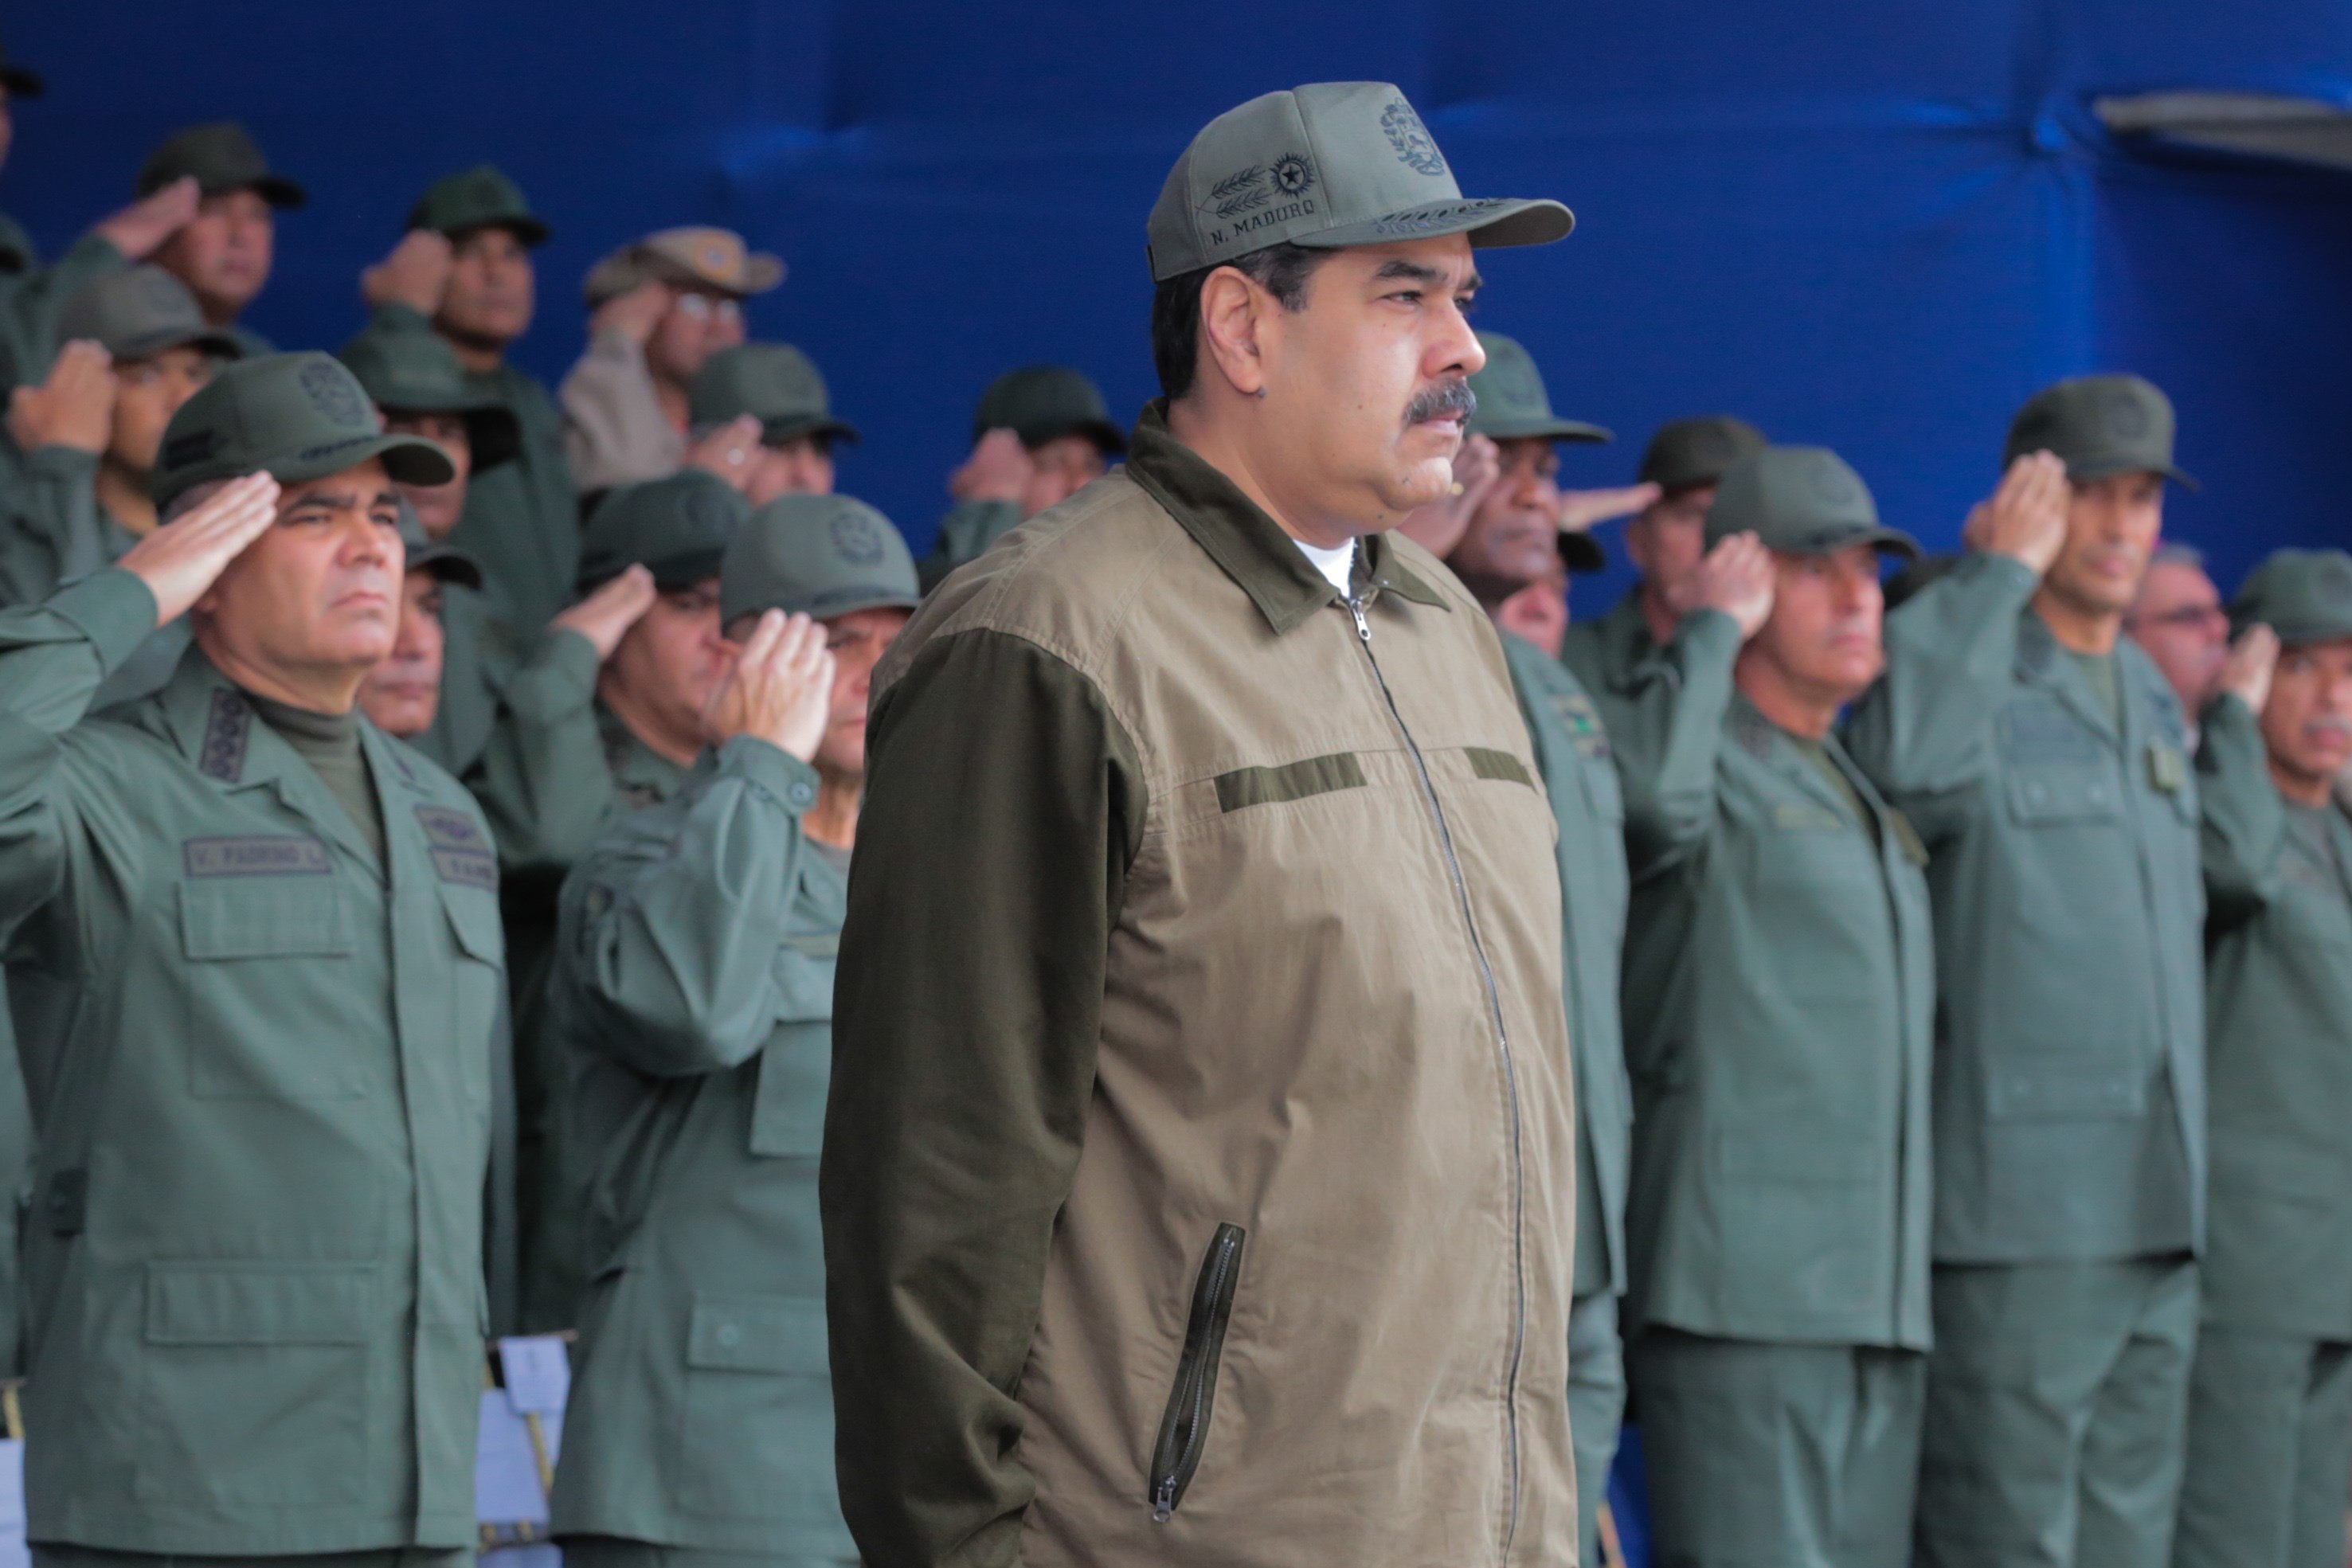  Asegura Maduro que su nuevo mandato sí tendrá legitimidad constitucional